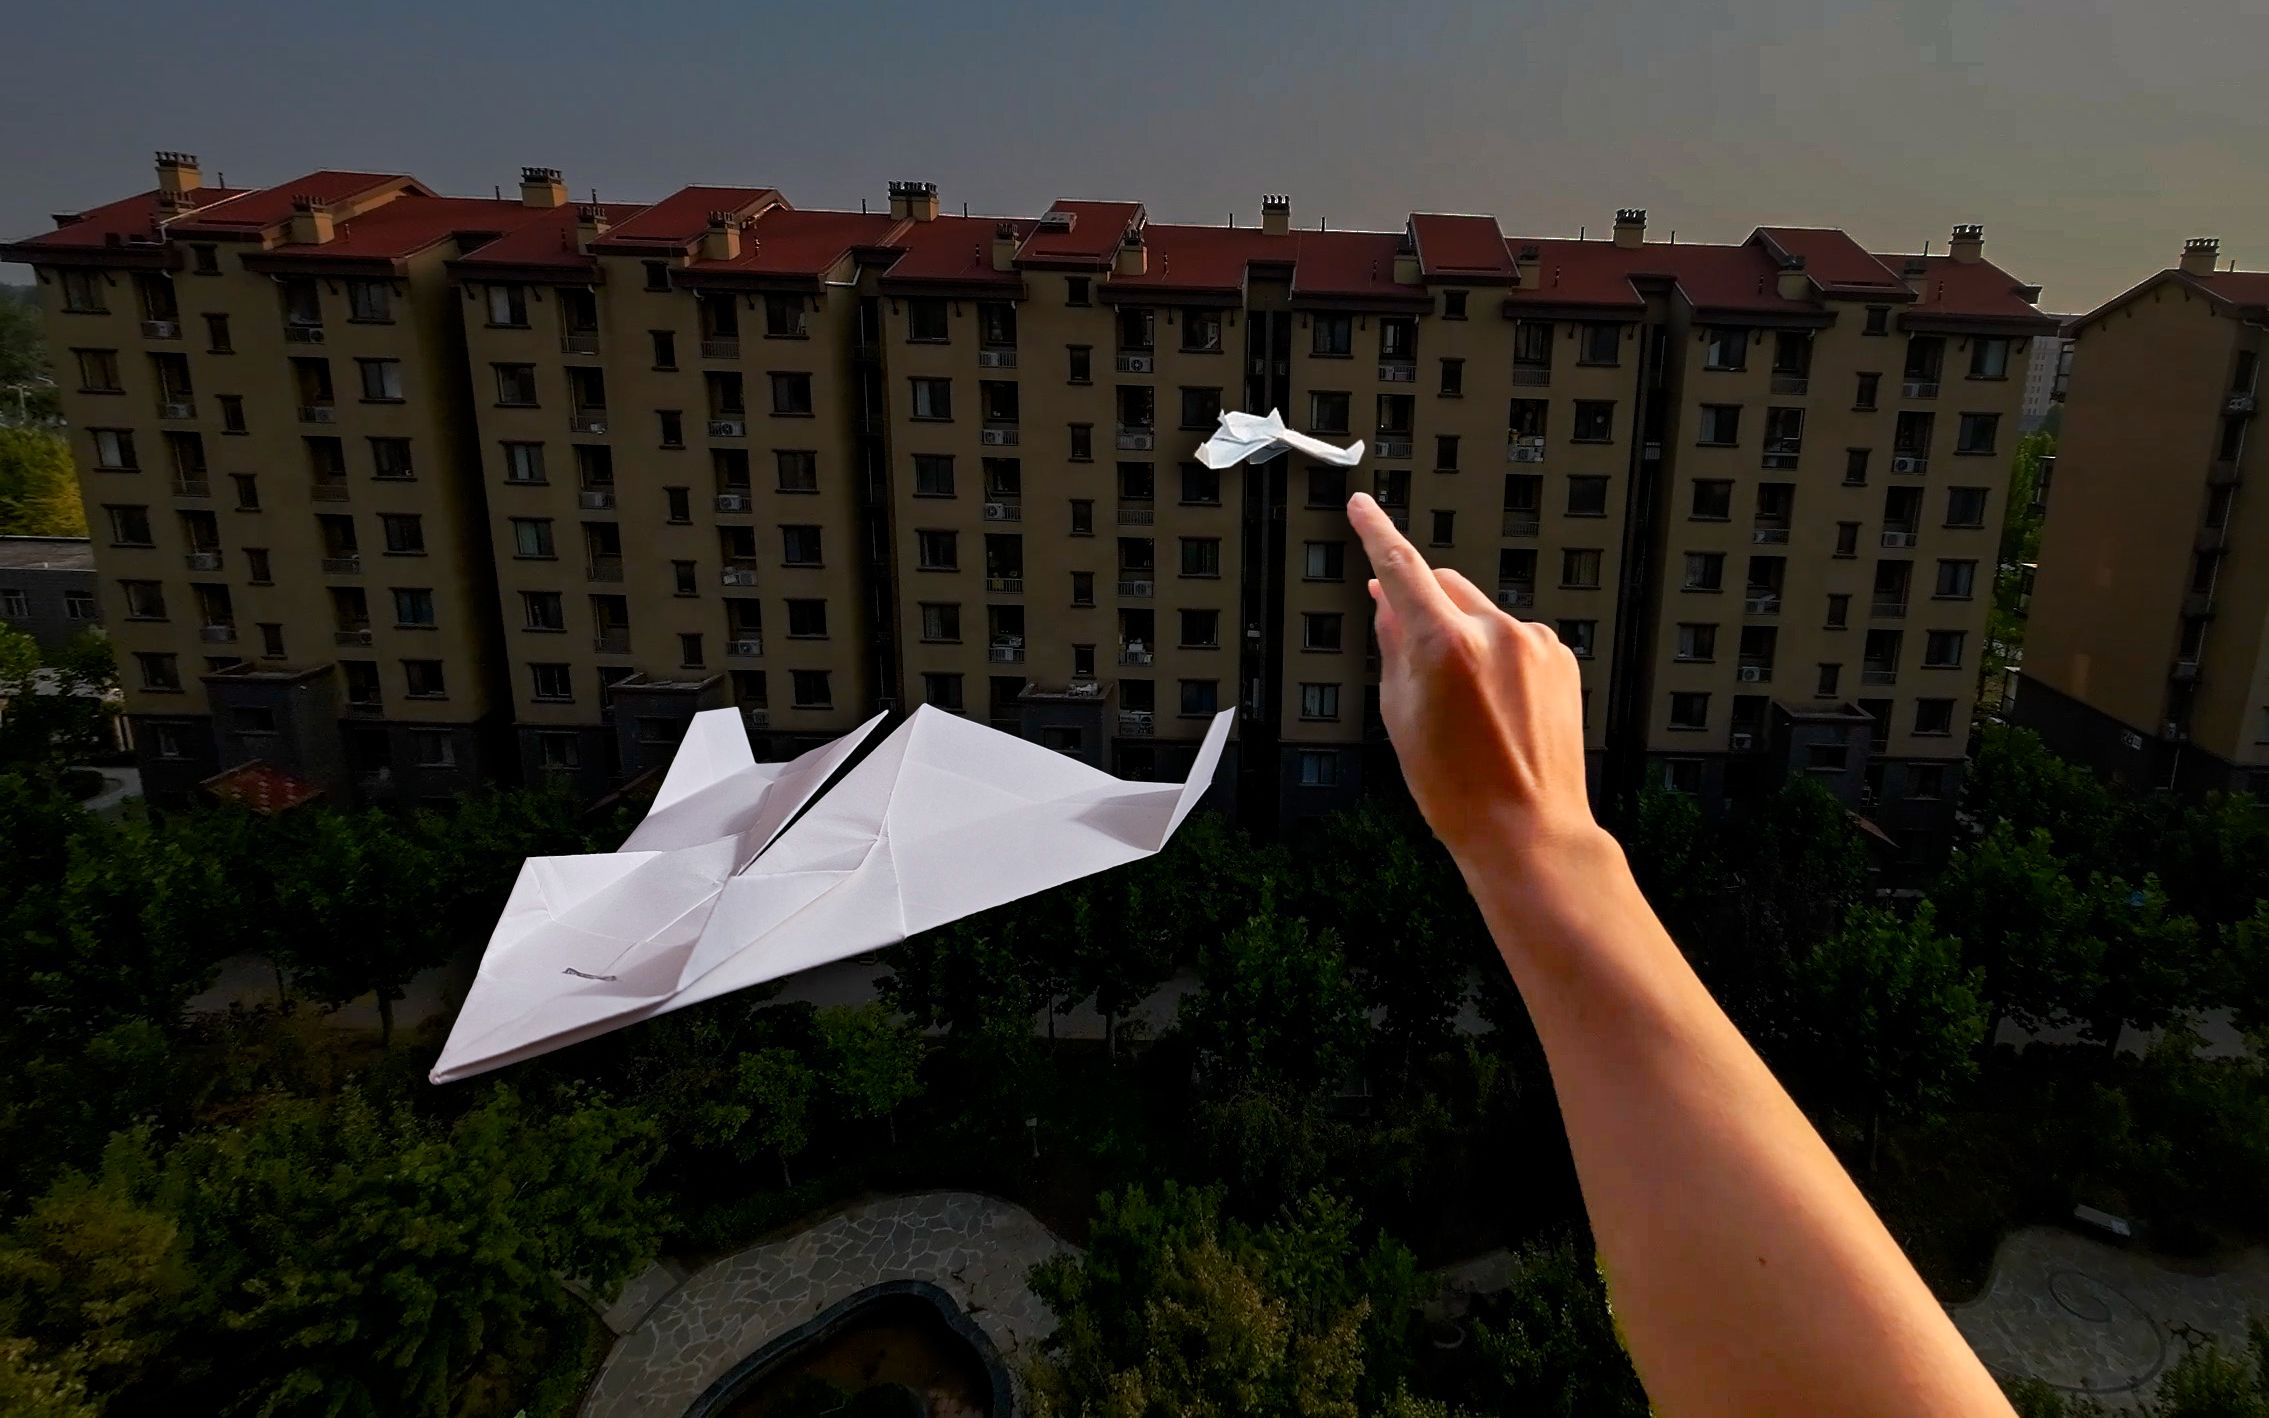 爱心纸飞机的折法图片